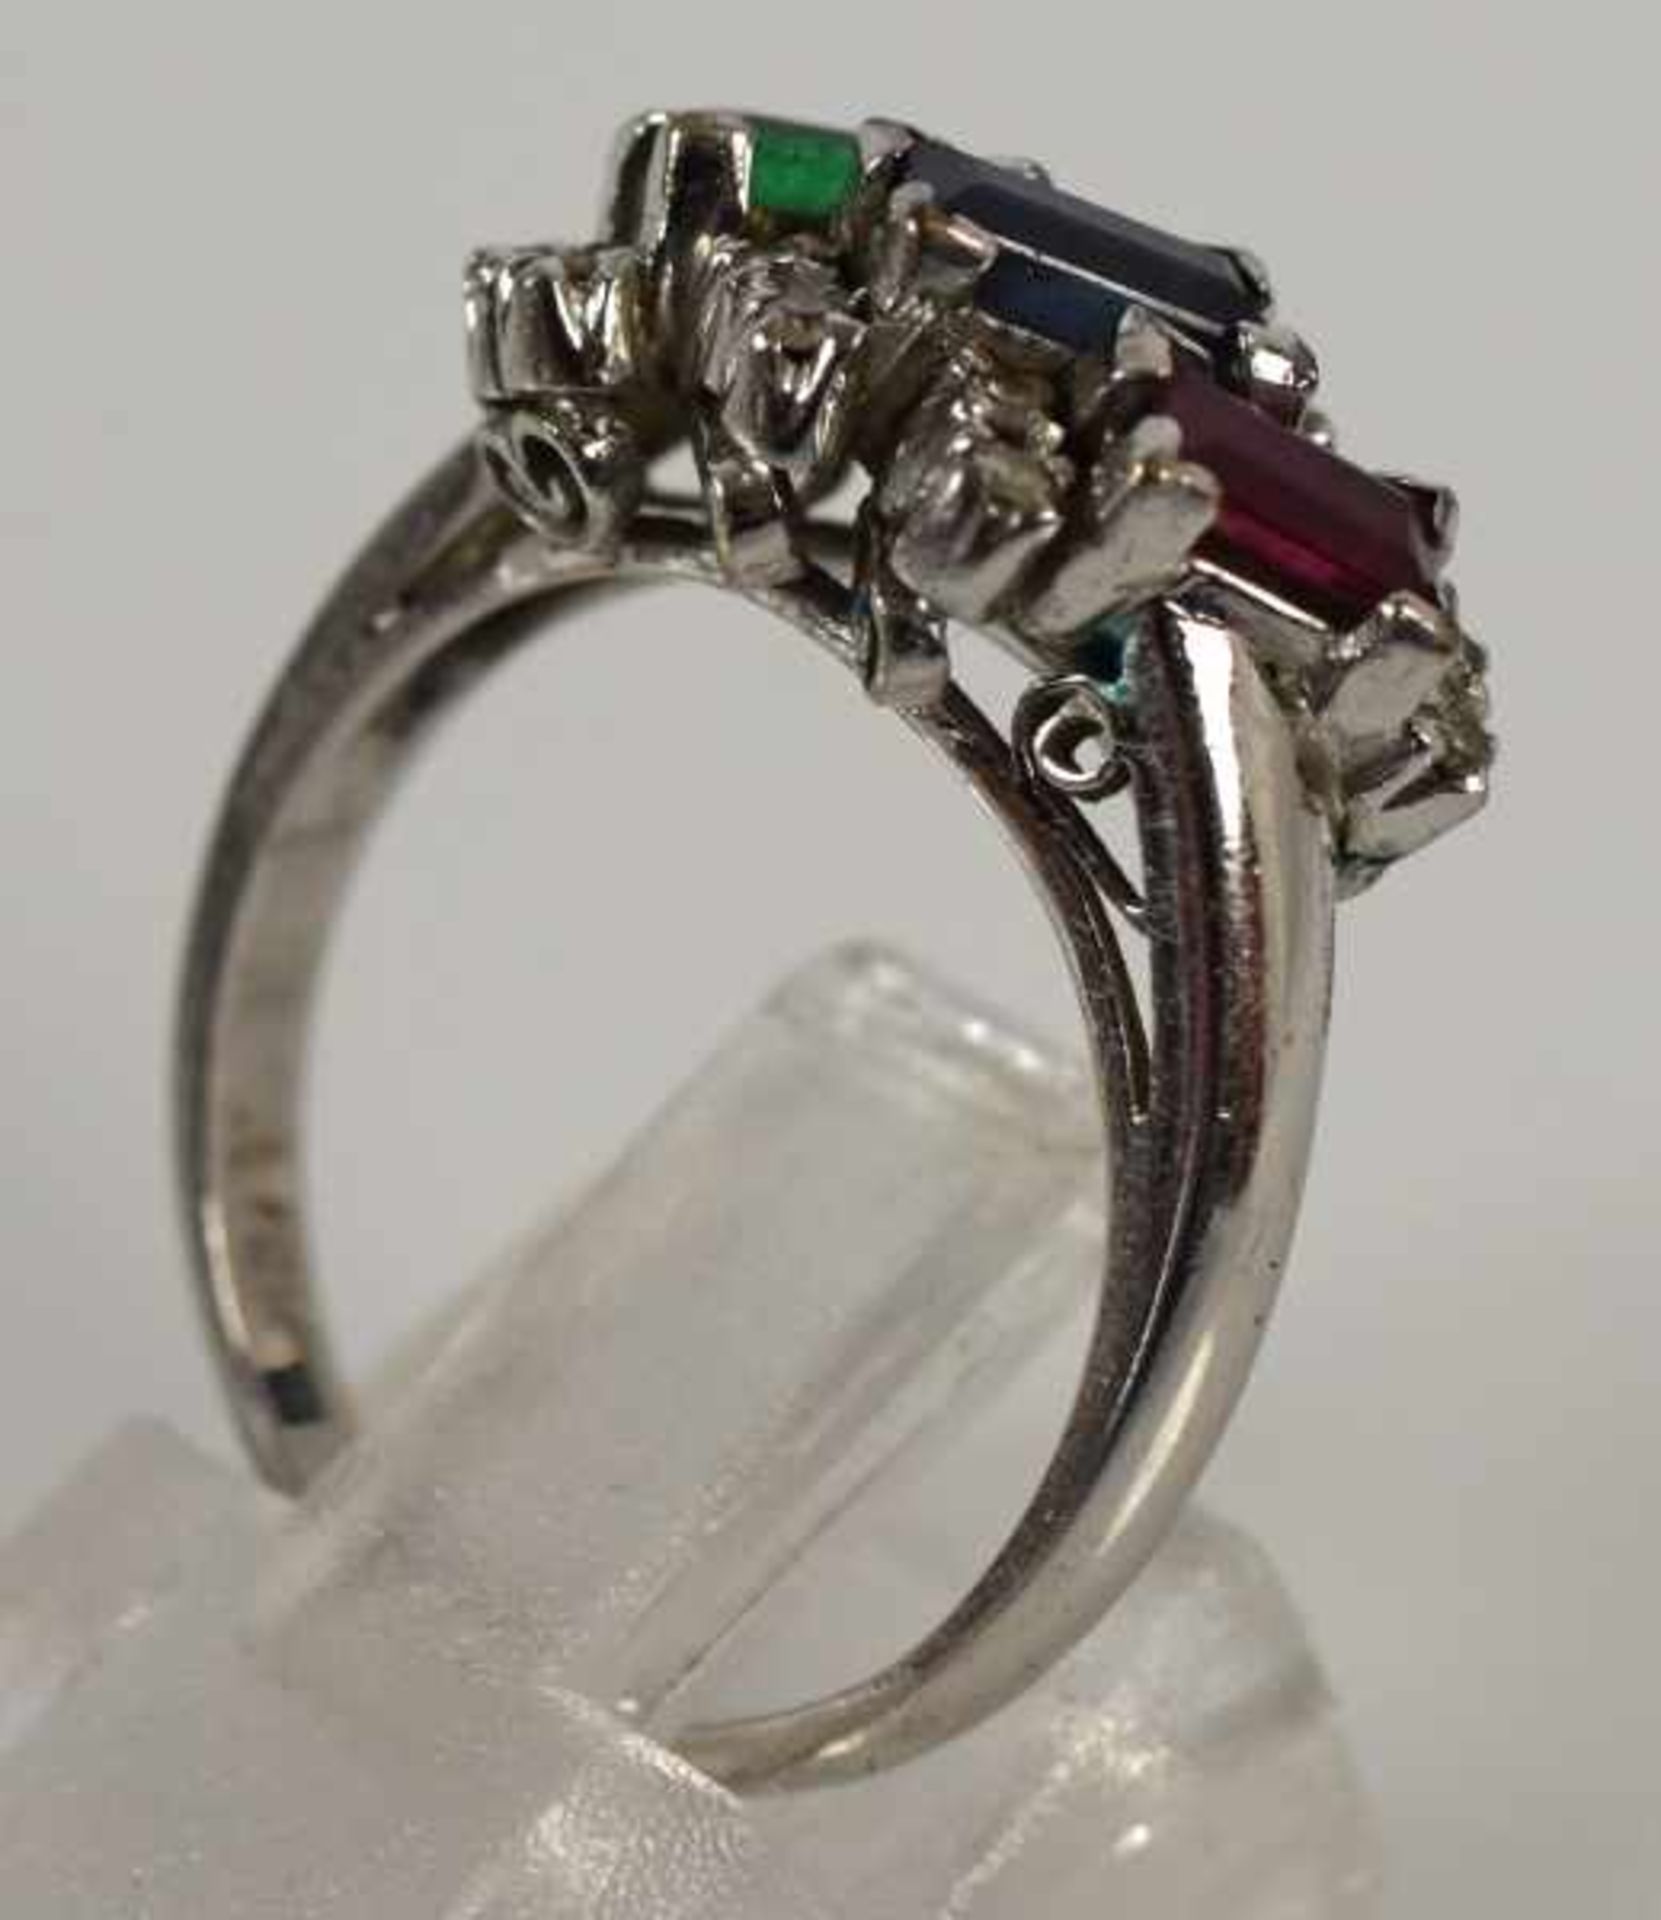 RING Schauseite mit geschliffenem Smaragd, Rubin, Saphir in Baguetteform, seitlich kleine Diamanten, - Bild 2 aus 3